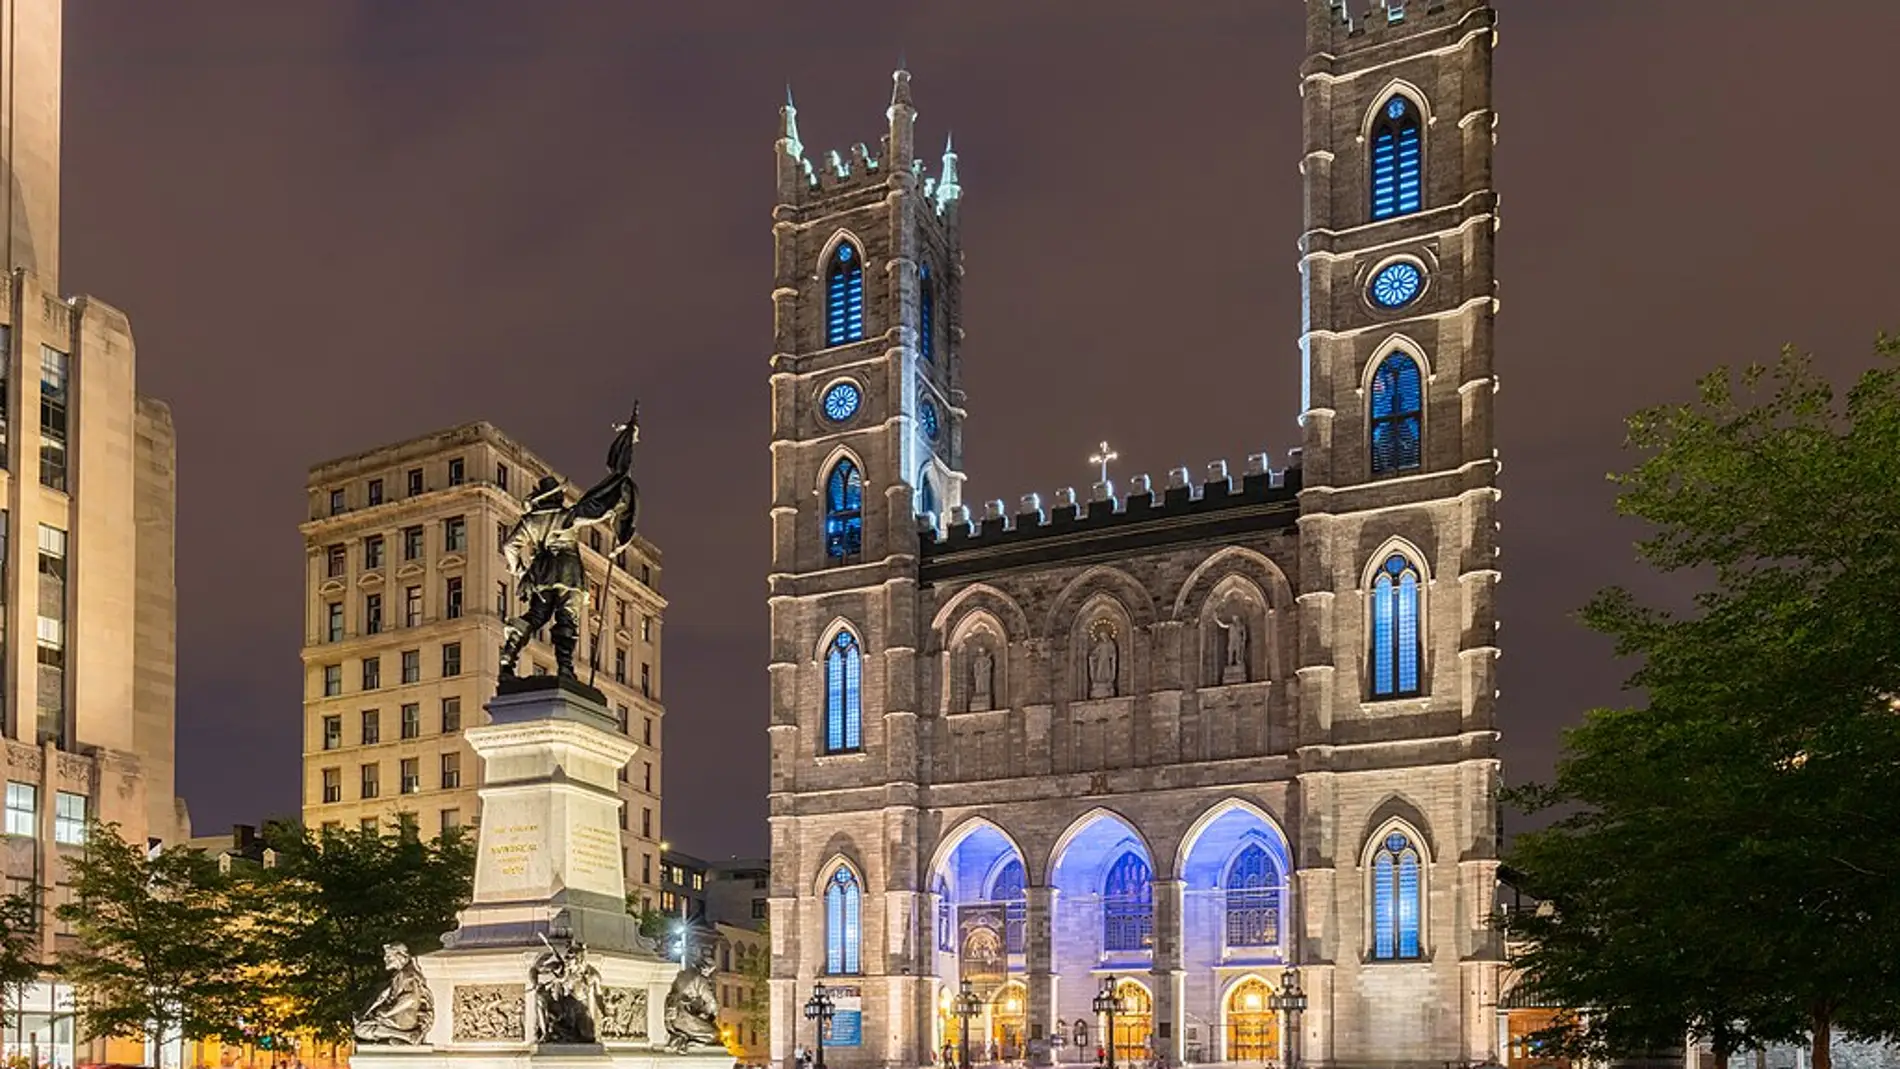 Basílica de Notre-Dame de Montreal: ¿sabías que es considerado como “Lugar histórico nacional de Canadá”?